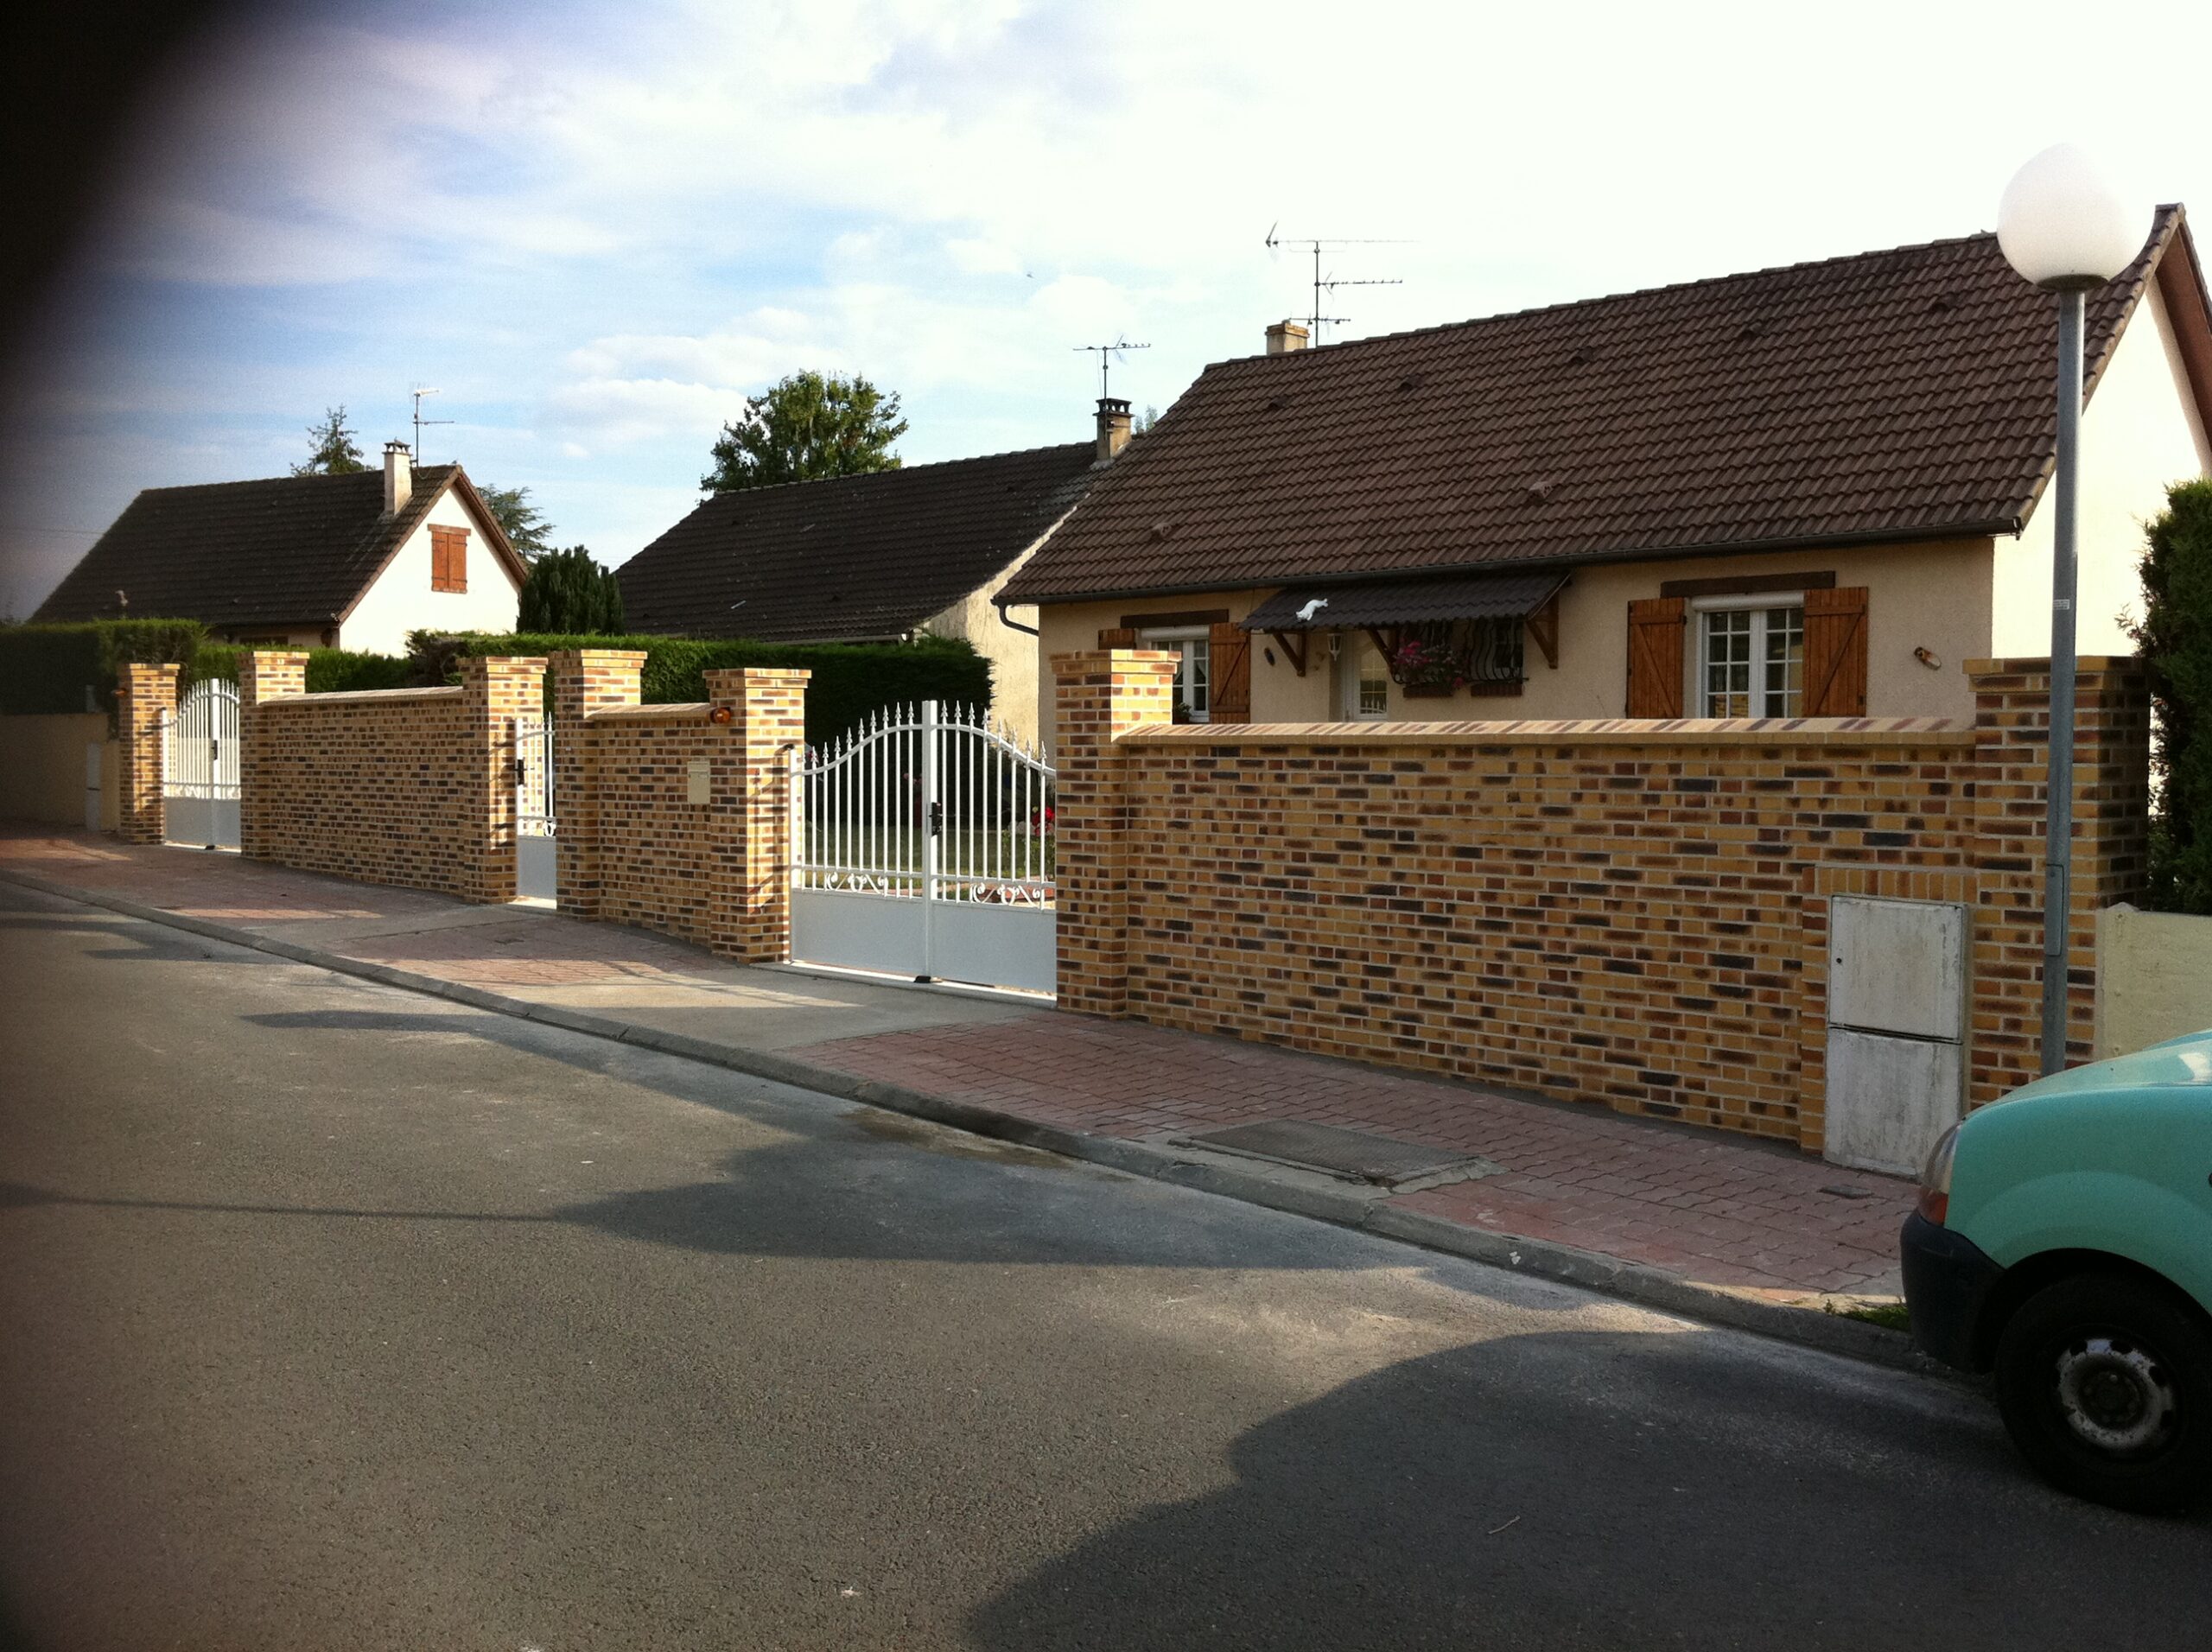 Mur de clôture en briques pleines décorative maçonnées à la chaux.